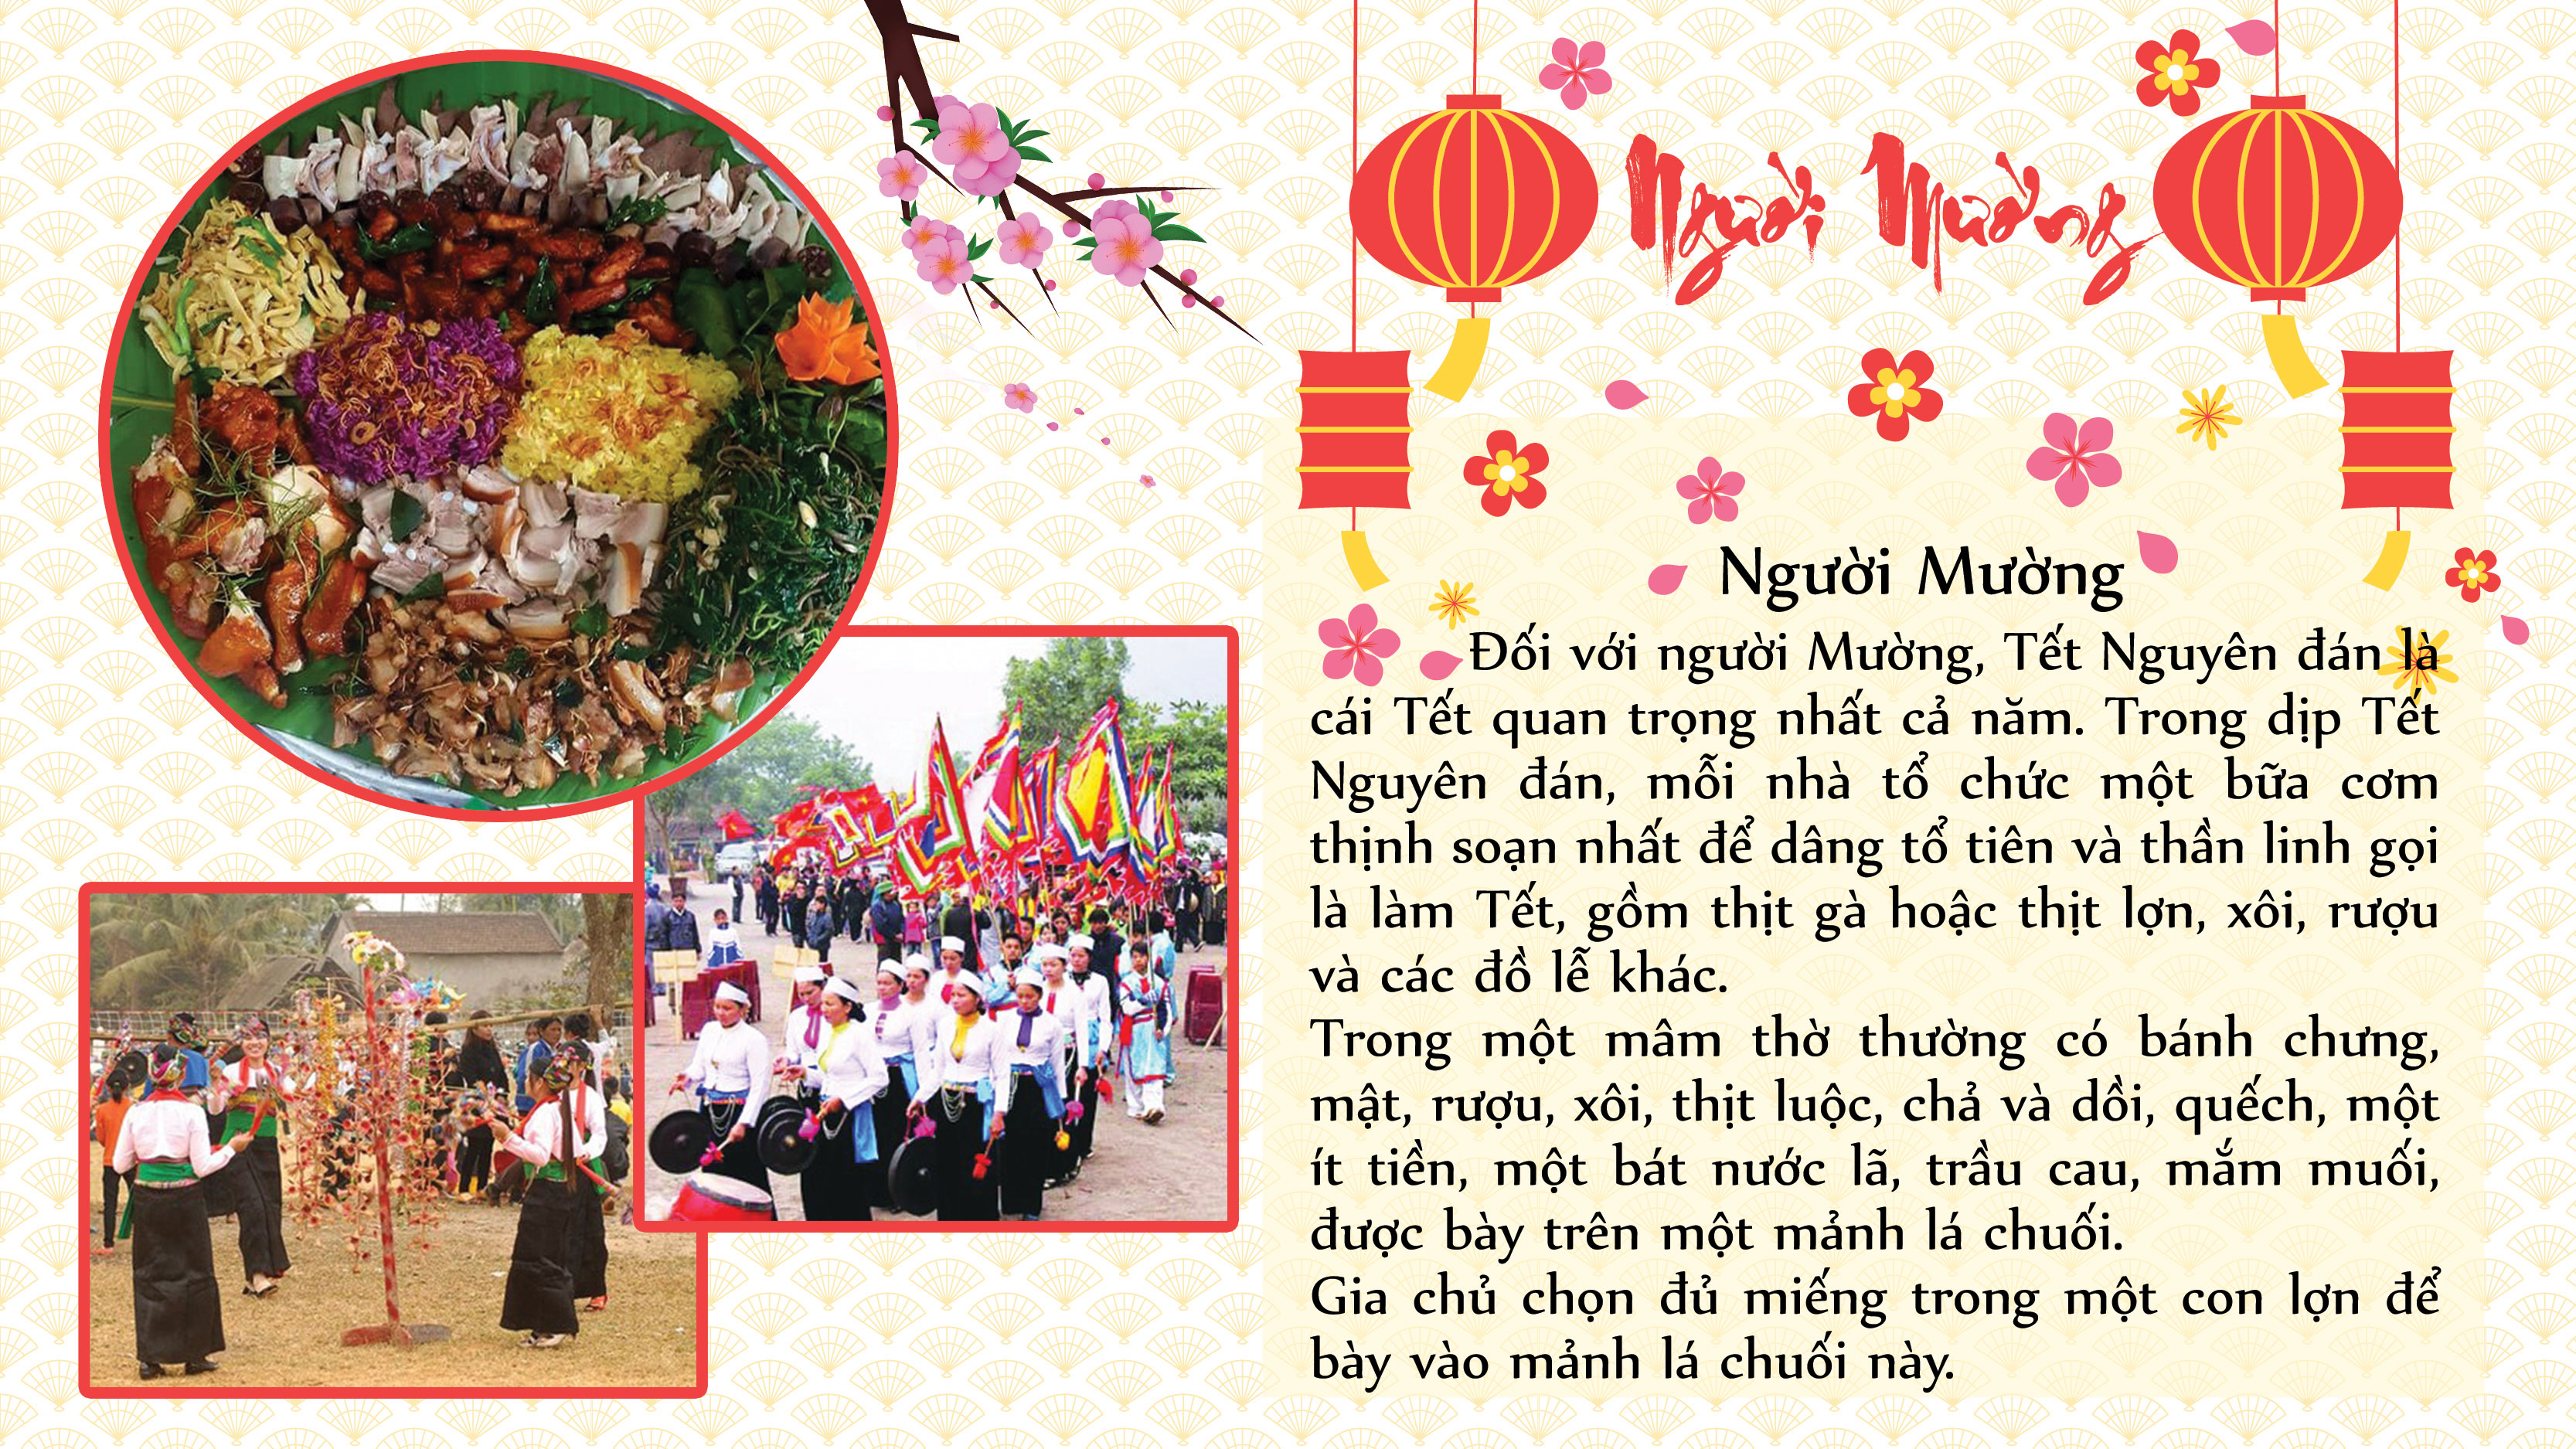 Phong tục: Vẻ đẹp của văn hóa Việt Nam chính là những phong tục tập quán truyền thống độc đáo. Hãy khám phá và tìm hiểu những phong tục đặc trưng của người Việt, từ đó hiểu hơn về con người và đất nước Việt Nam.